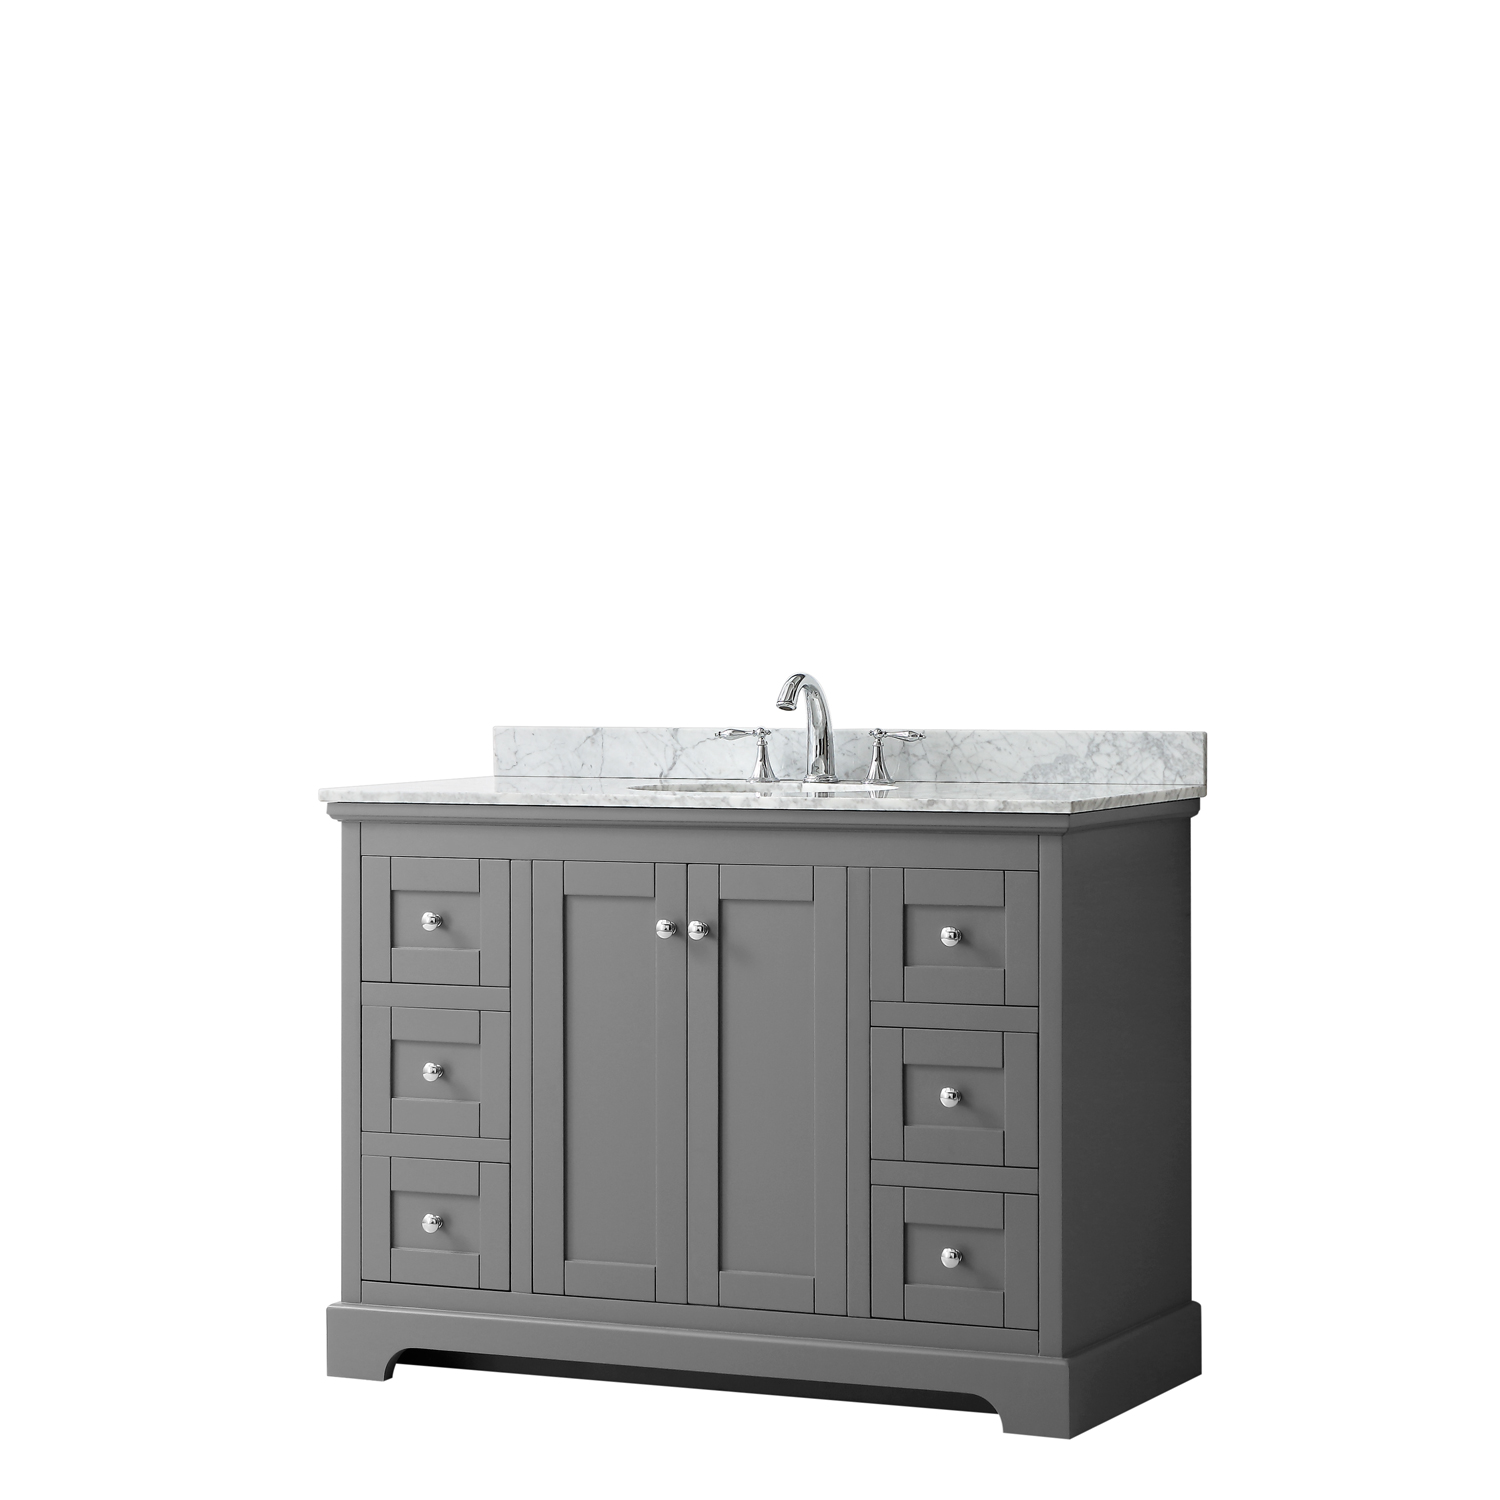 48" Single Bathroom Vanity in Dark Gray, No Countertop, No Sink, and No Mirror